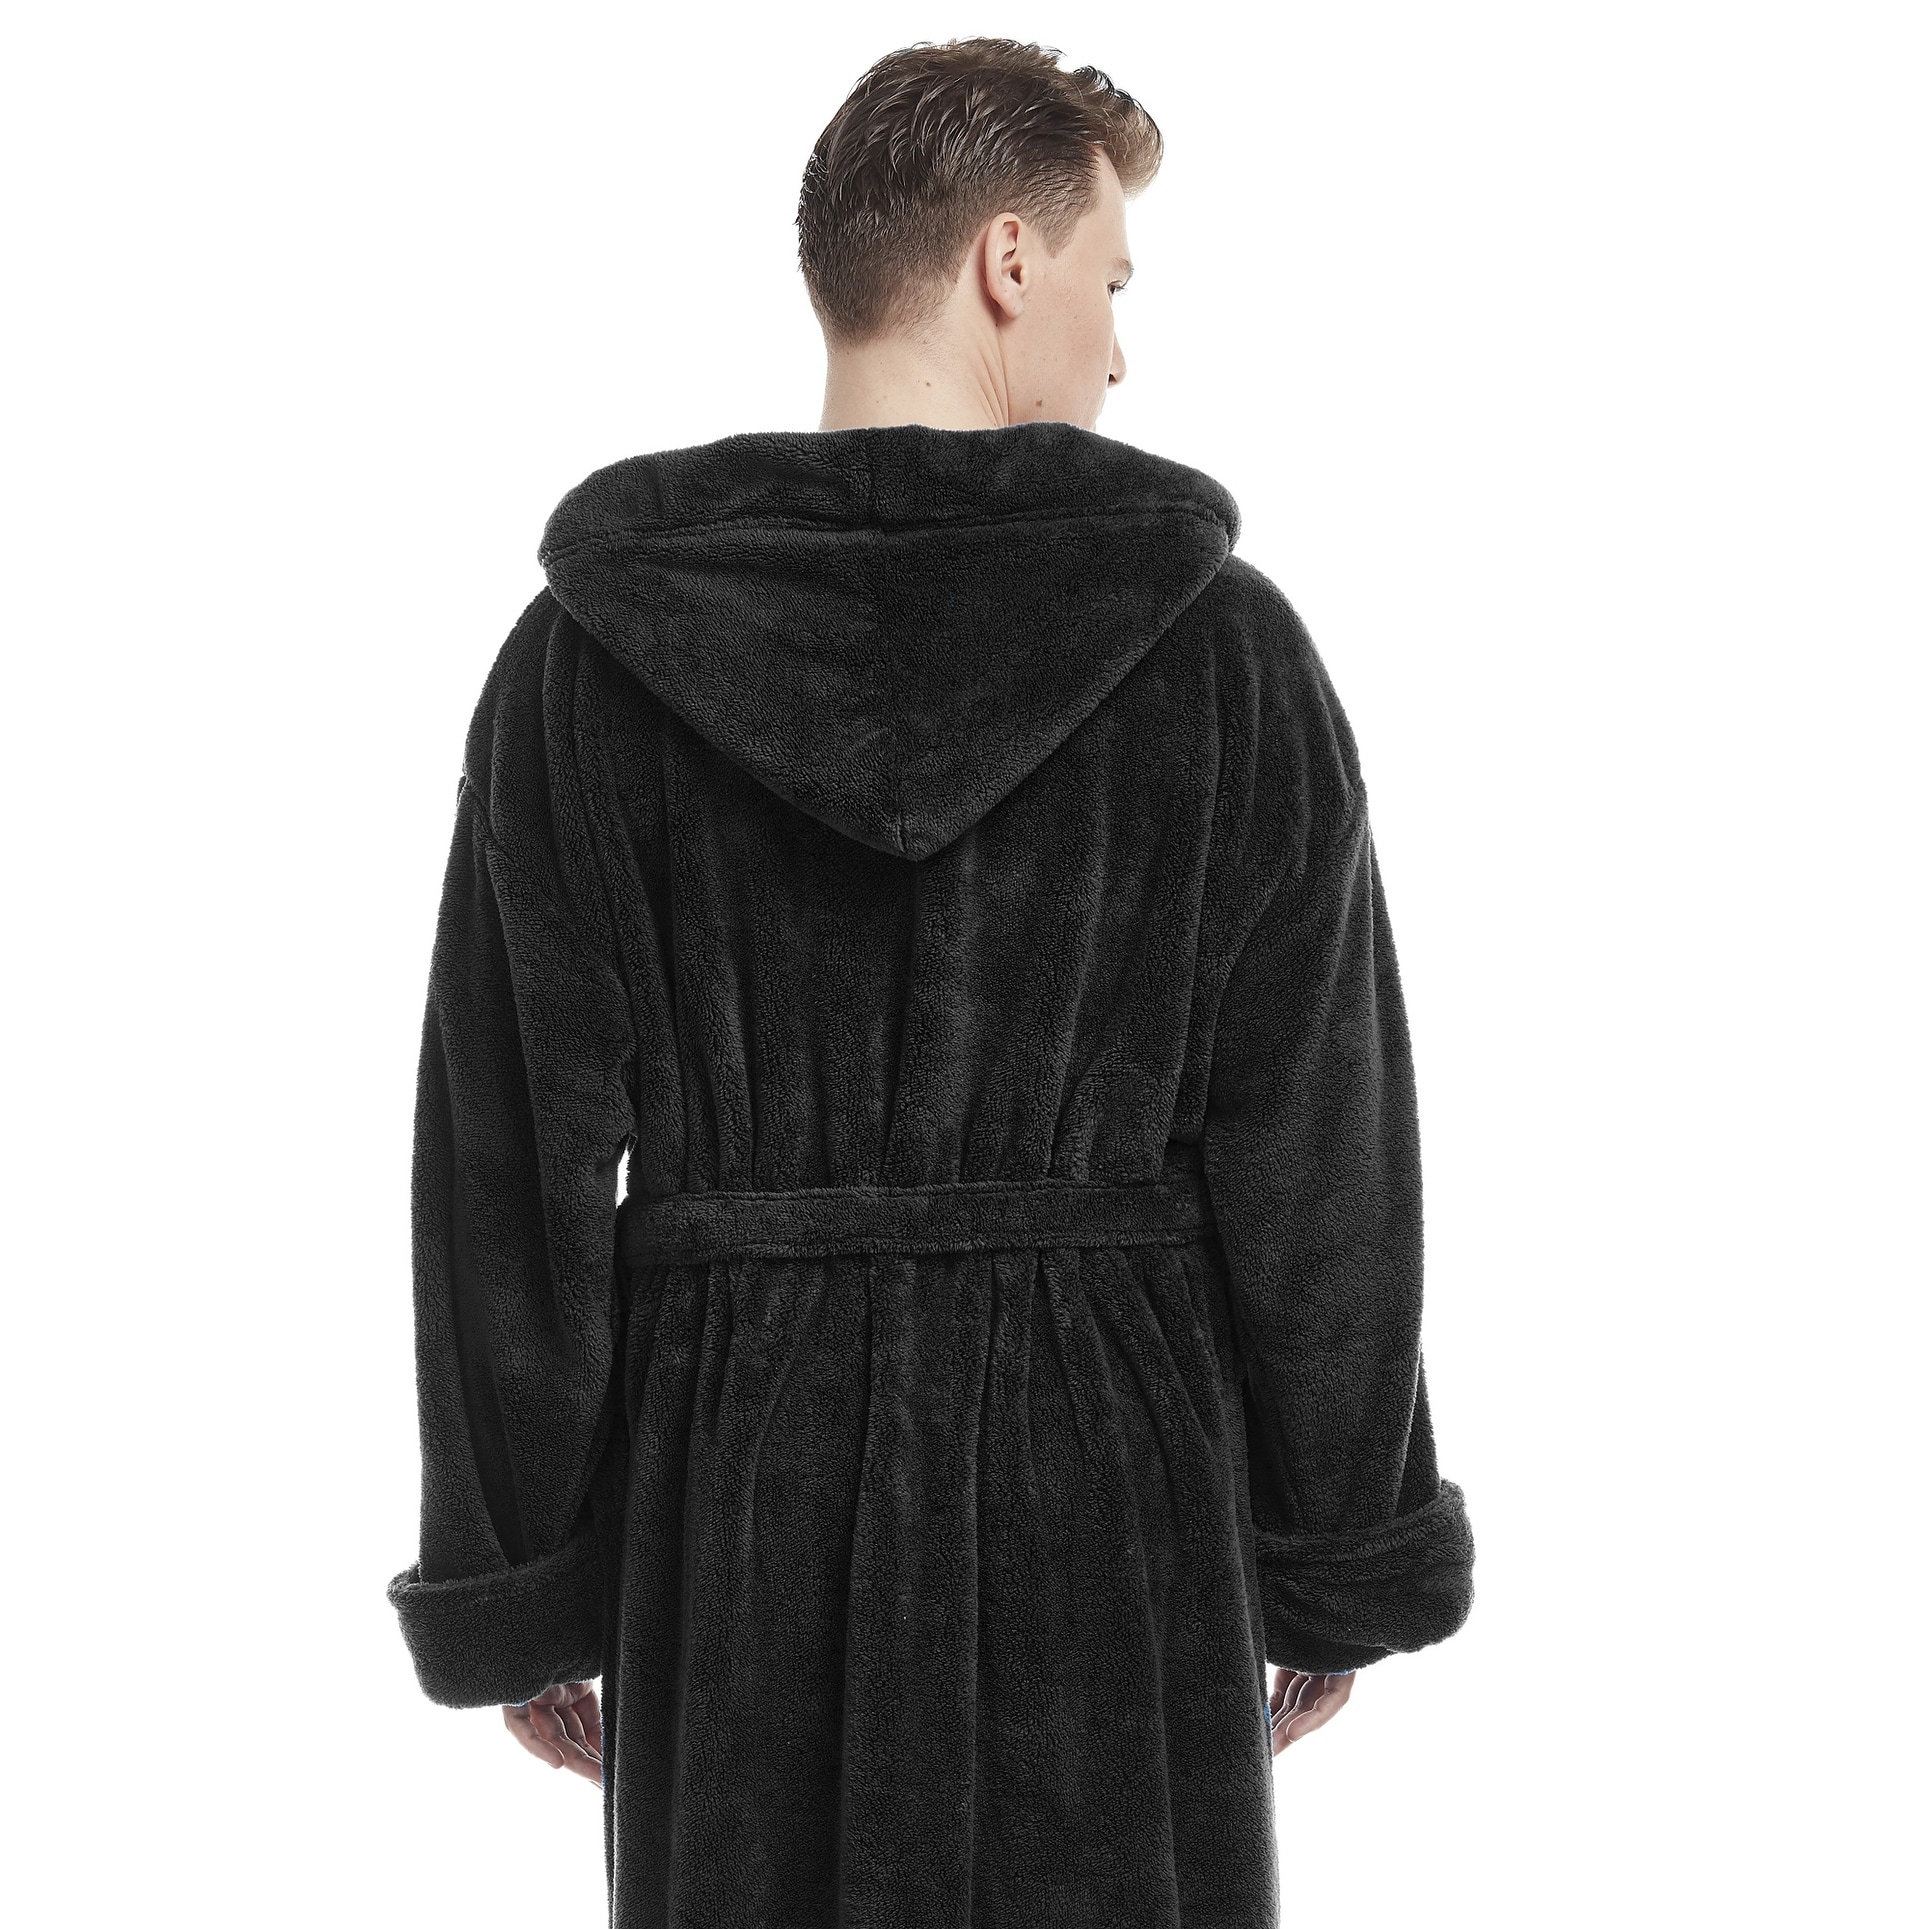 Men's Hooded Soft Plush Fleece Bathrobe Full Length Robe - On Sale - Bed  Bath & Beyond - 14387064